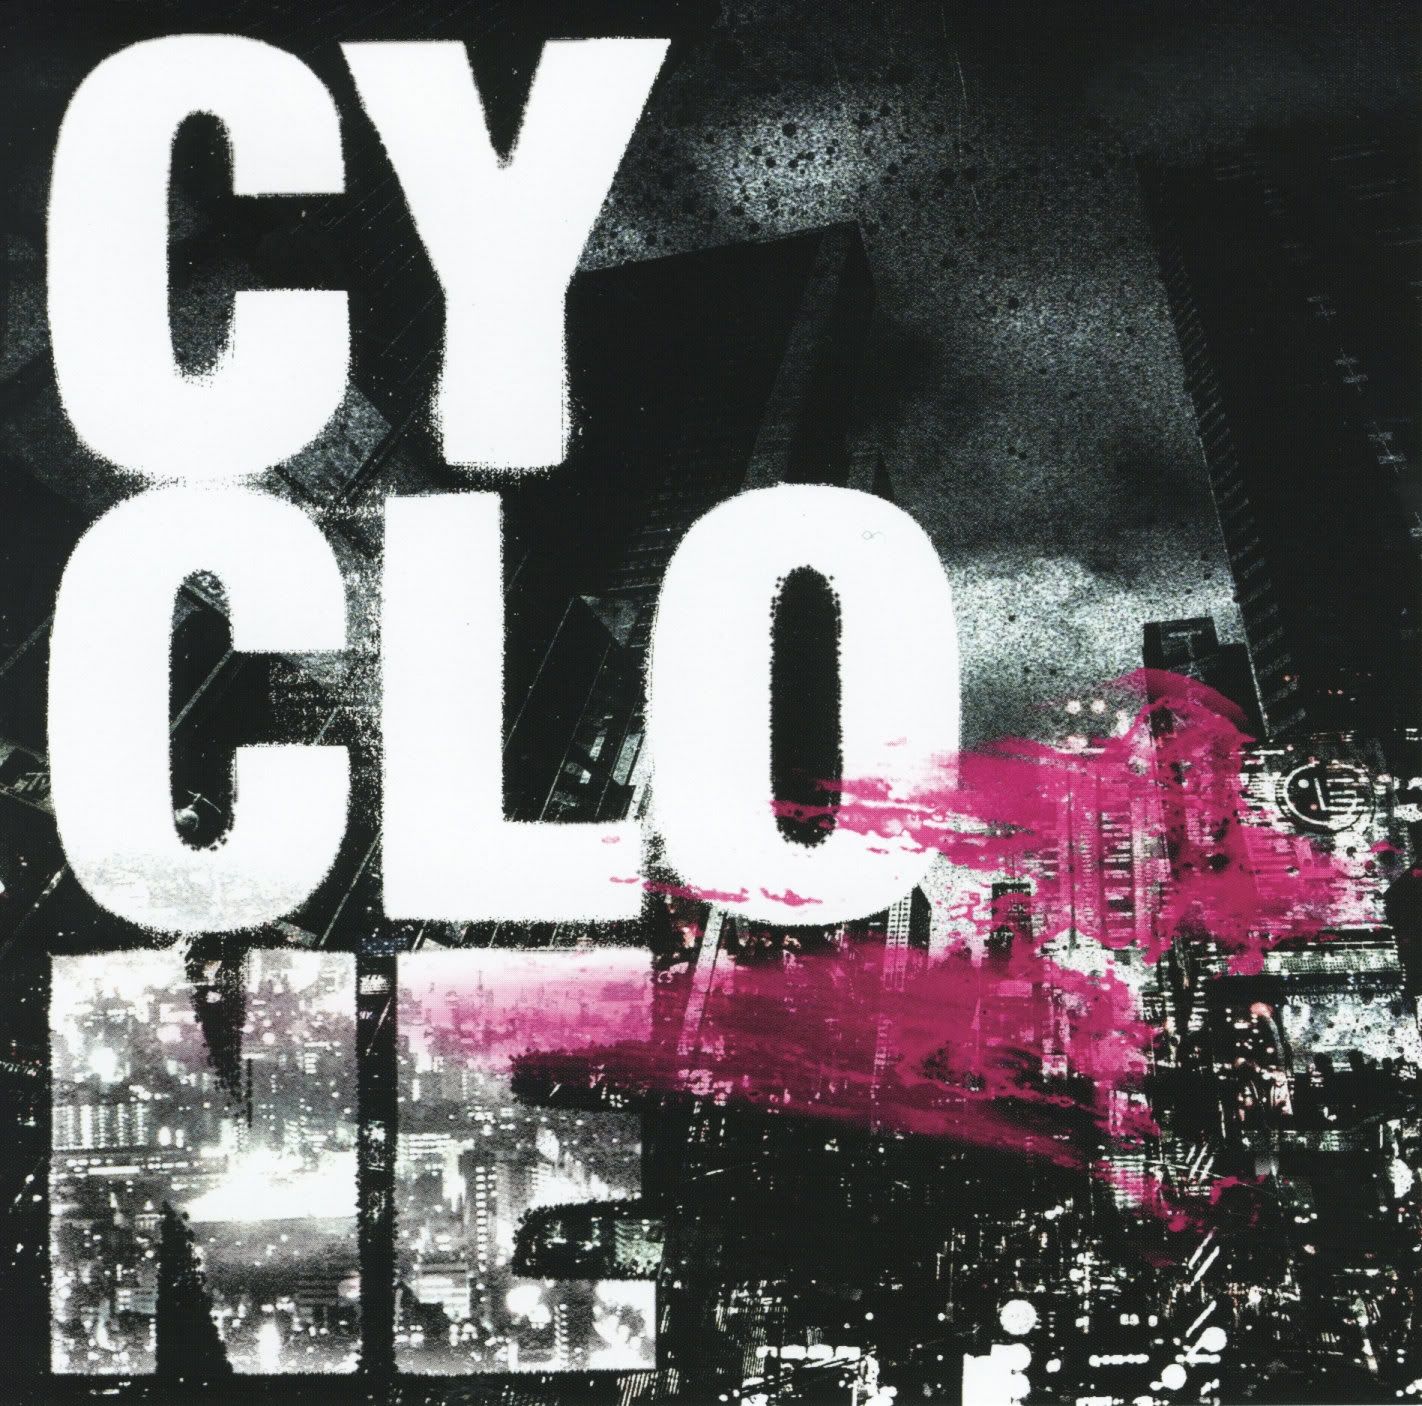 Imagem do álbum Cyclone do(a) artista 12012